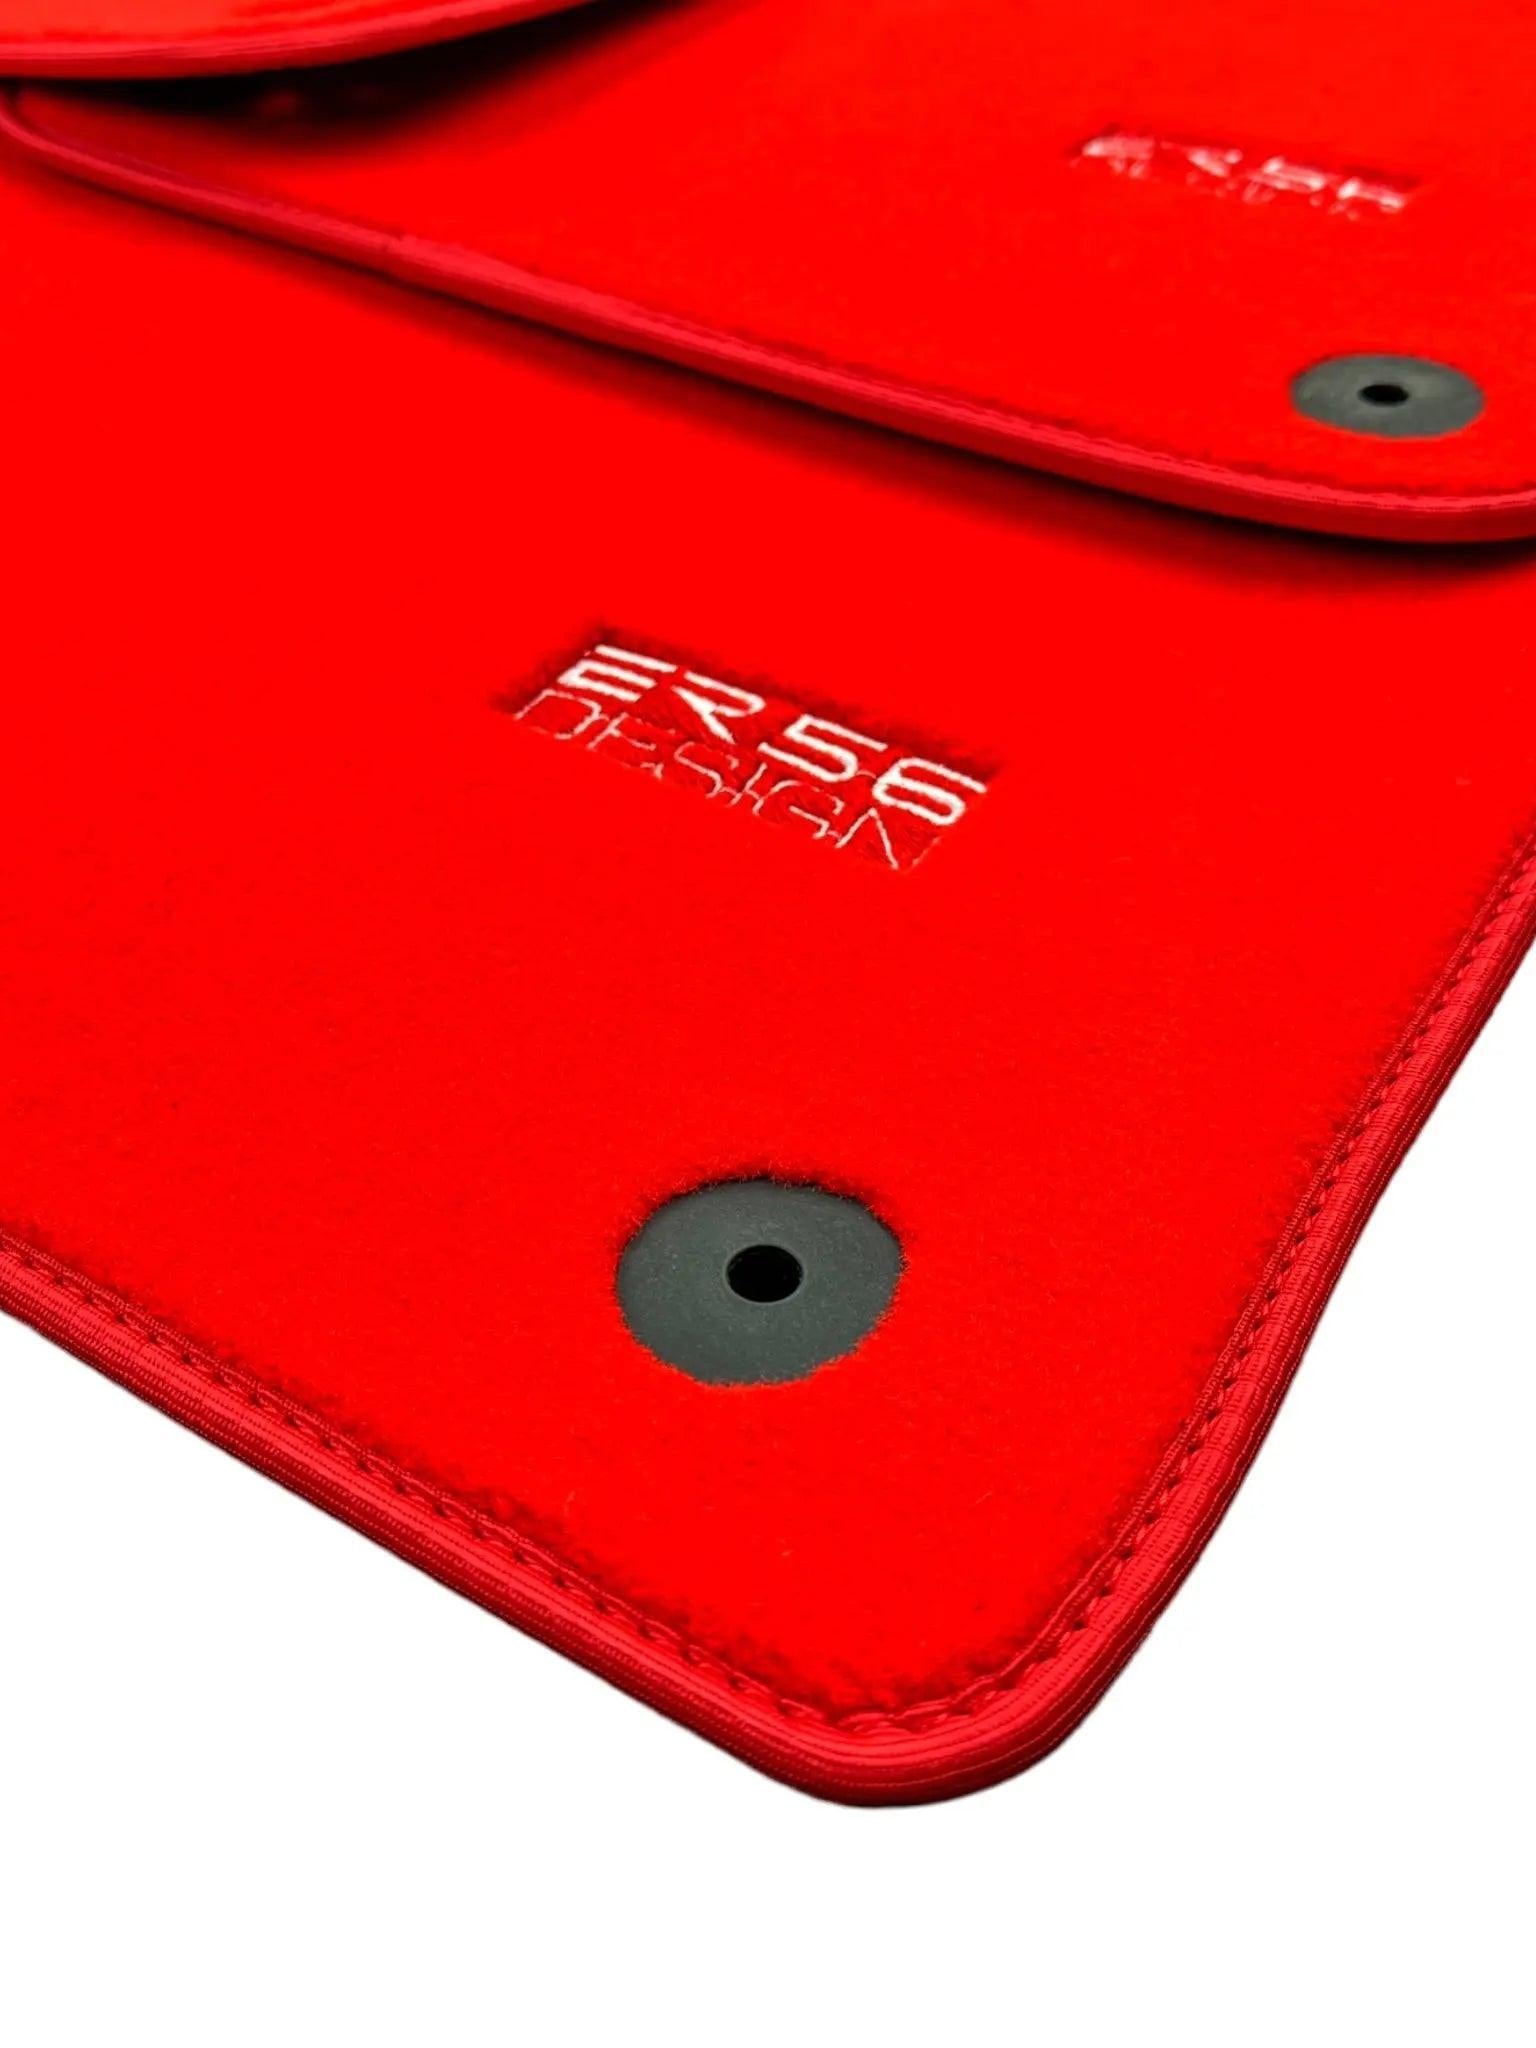 Red Floor Mats for Audi A6 - C6 Sedan Facelift (2008-2011) | ER56 Design